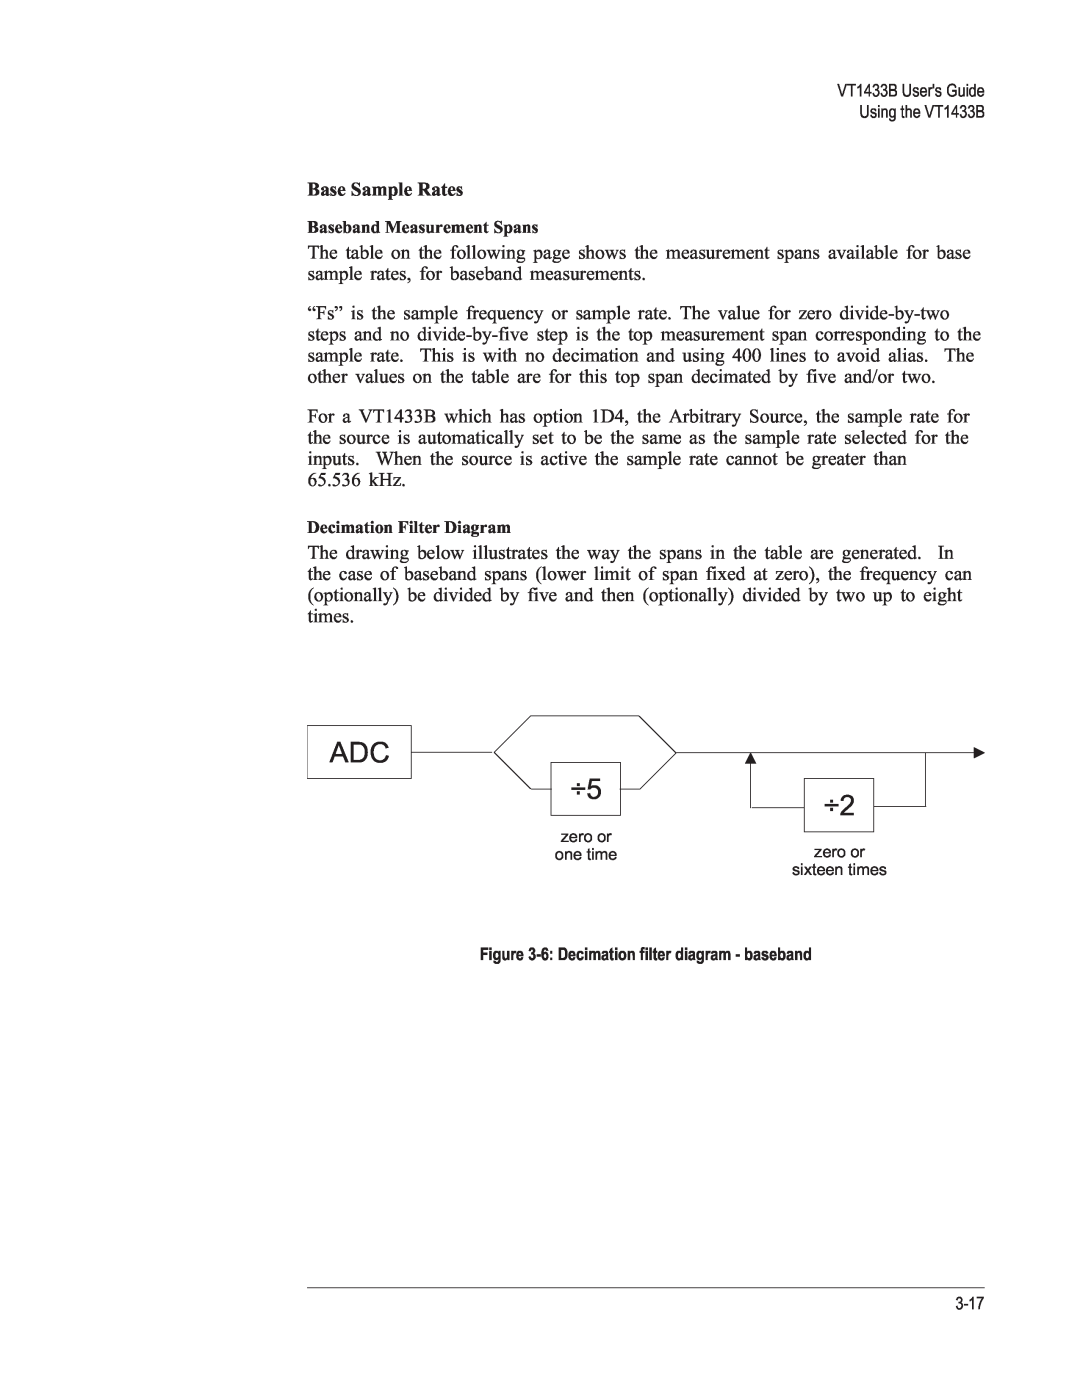 VXI VT1433B manual Base Sample Rates, ADC ÷5 